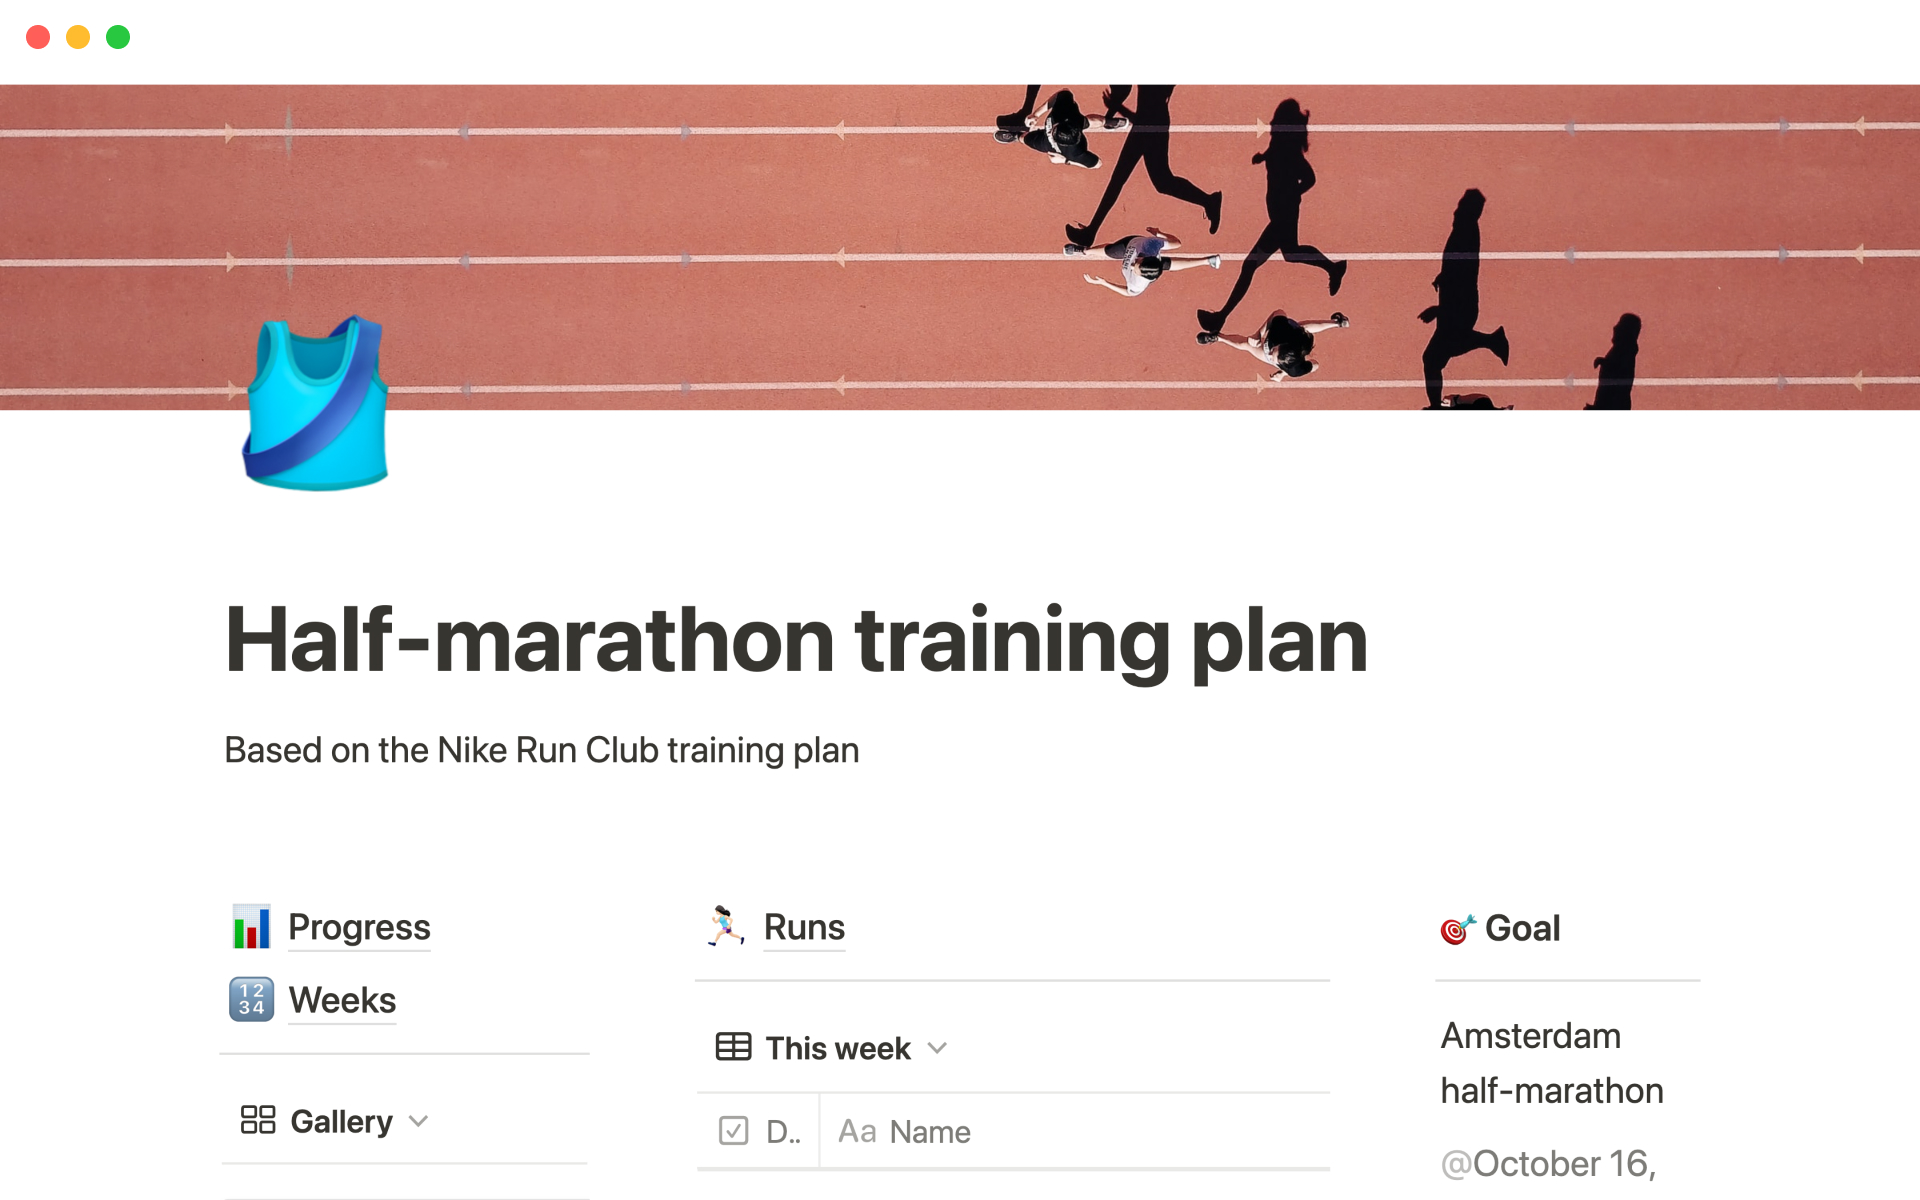 Uma prévia do modelo para NRC half-marathon training plan